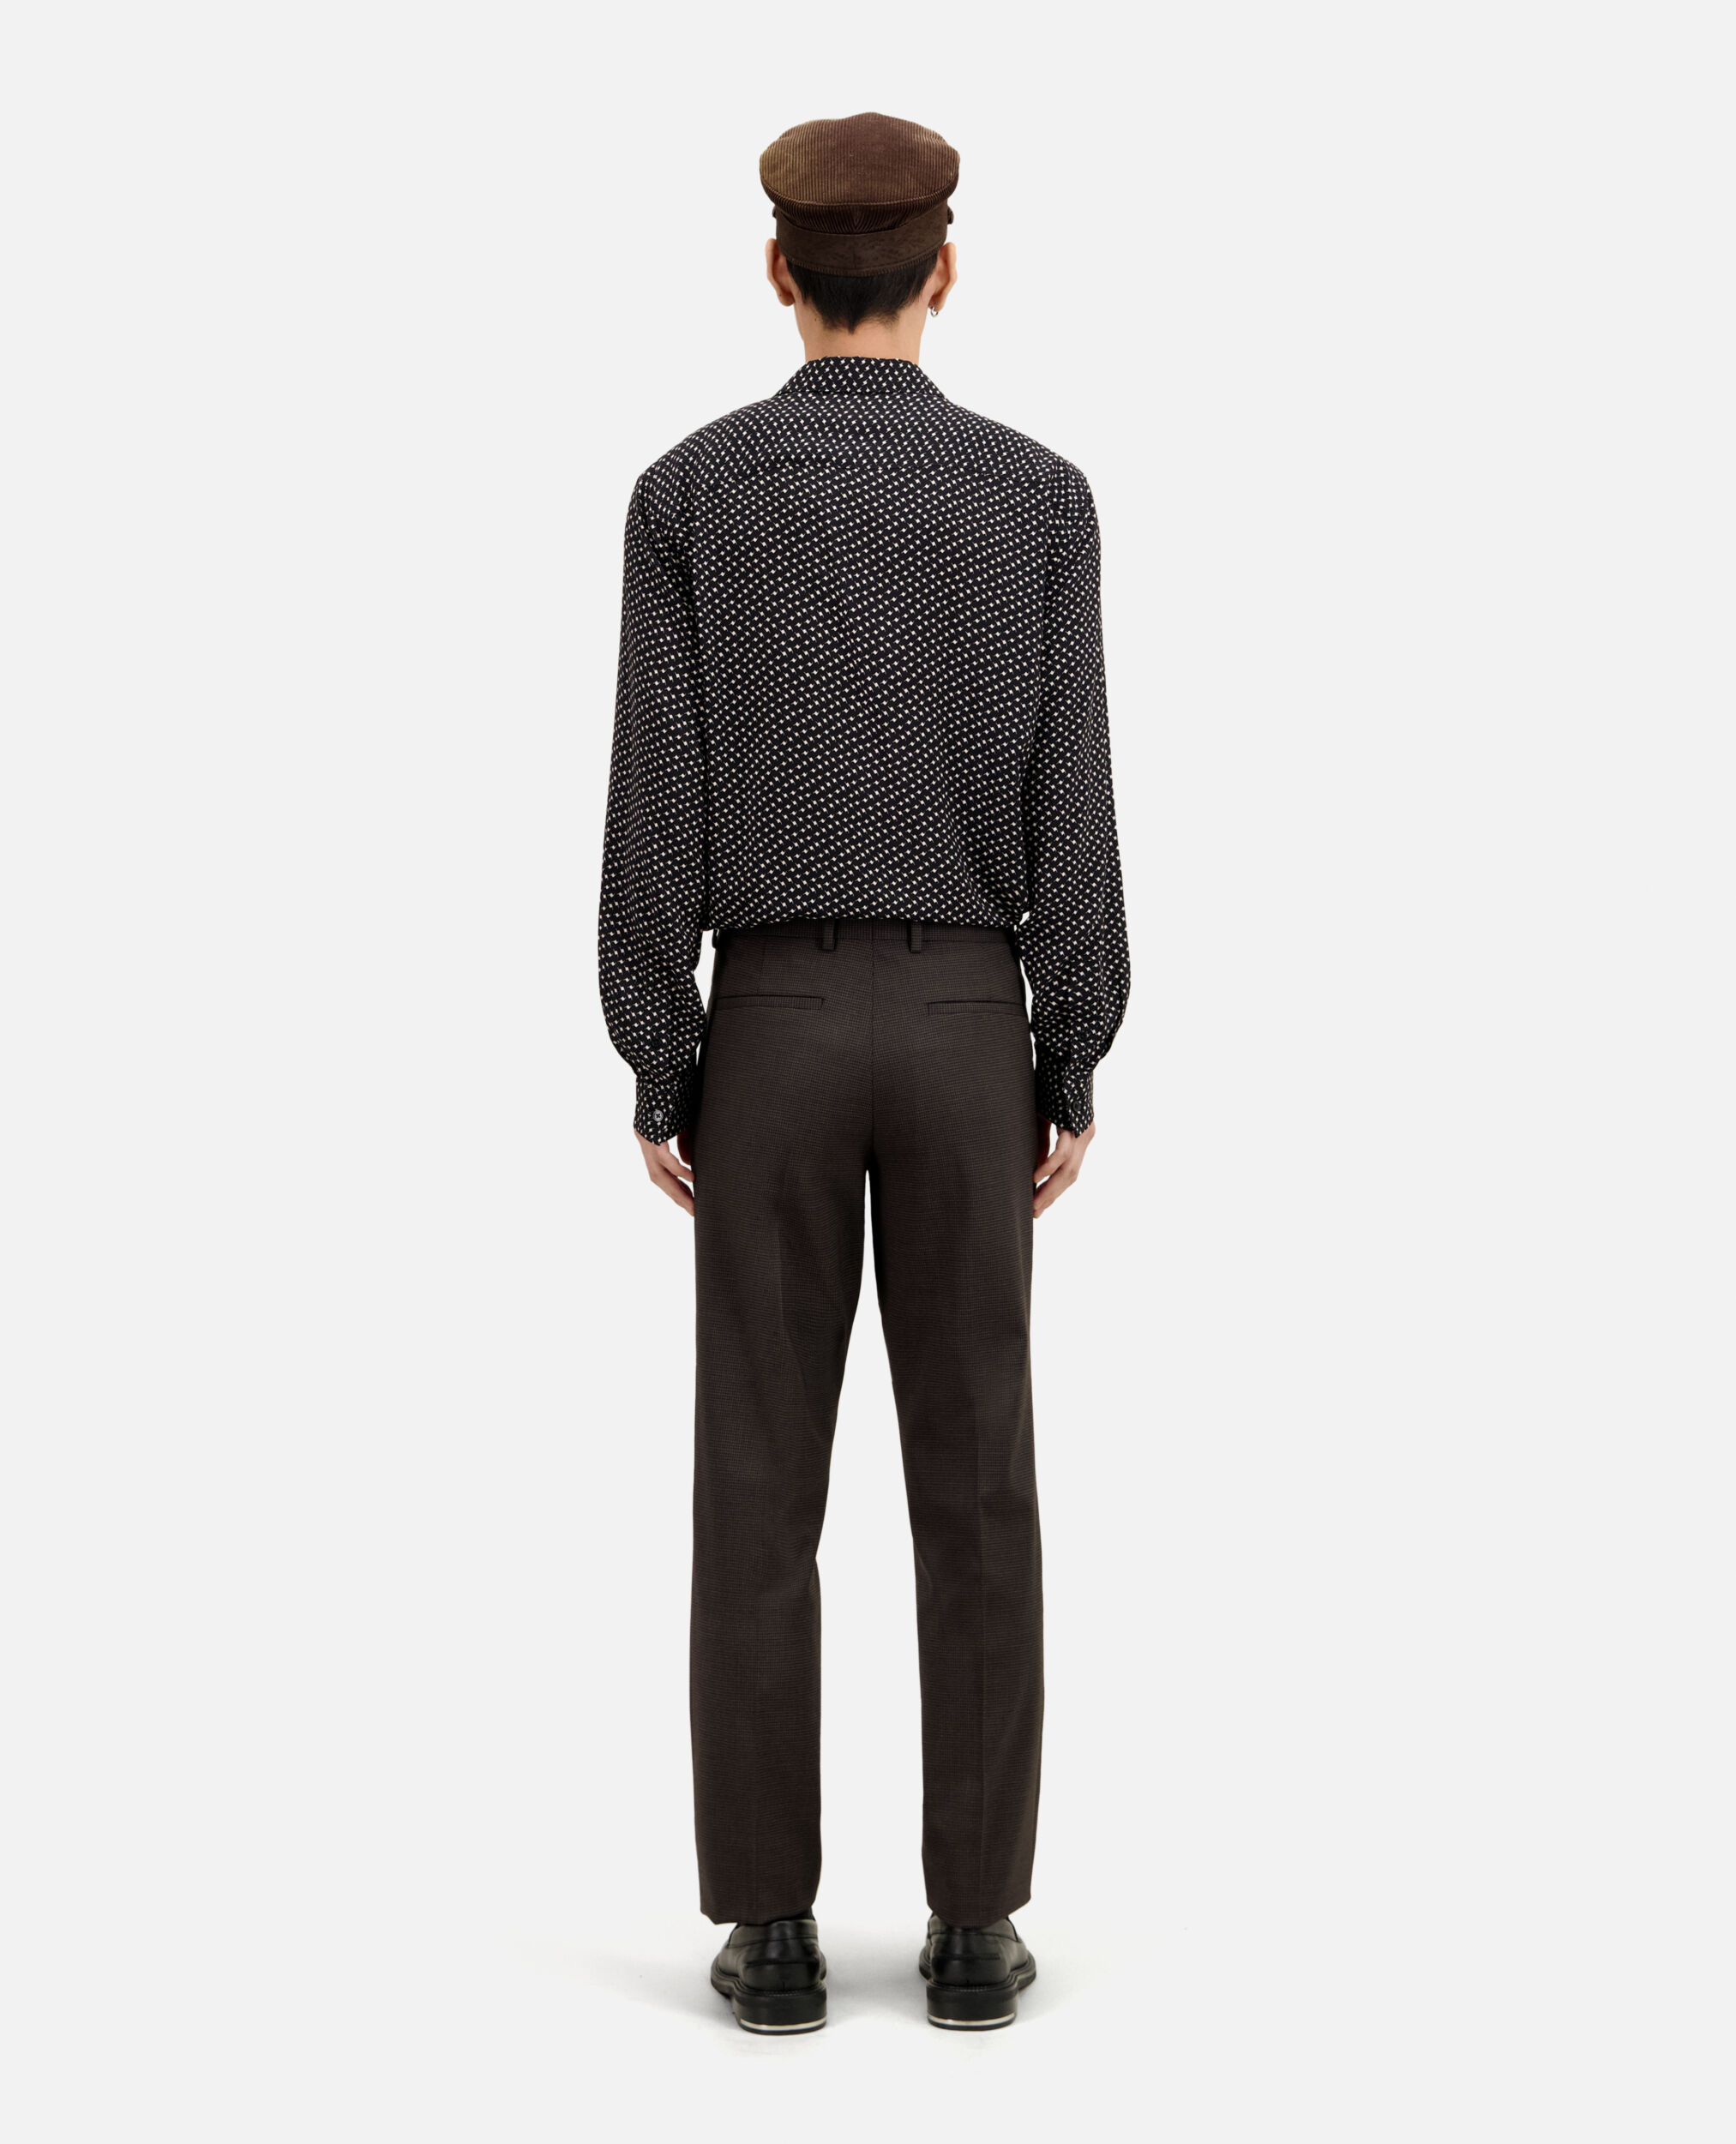 Pantalon de costume pied de poule marron en laine, BROWN / BLACK, hi-res image number null